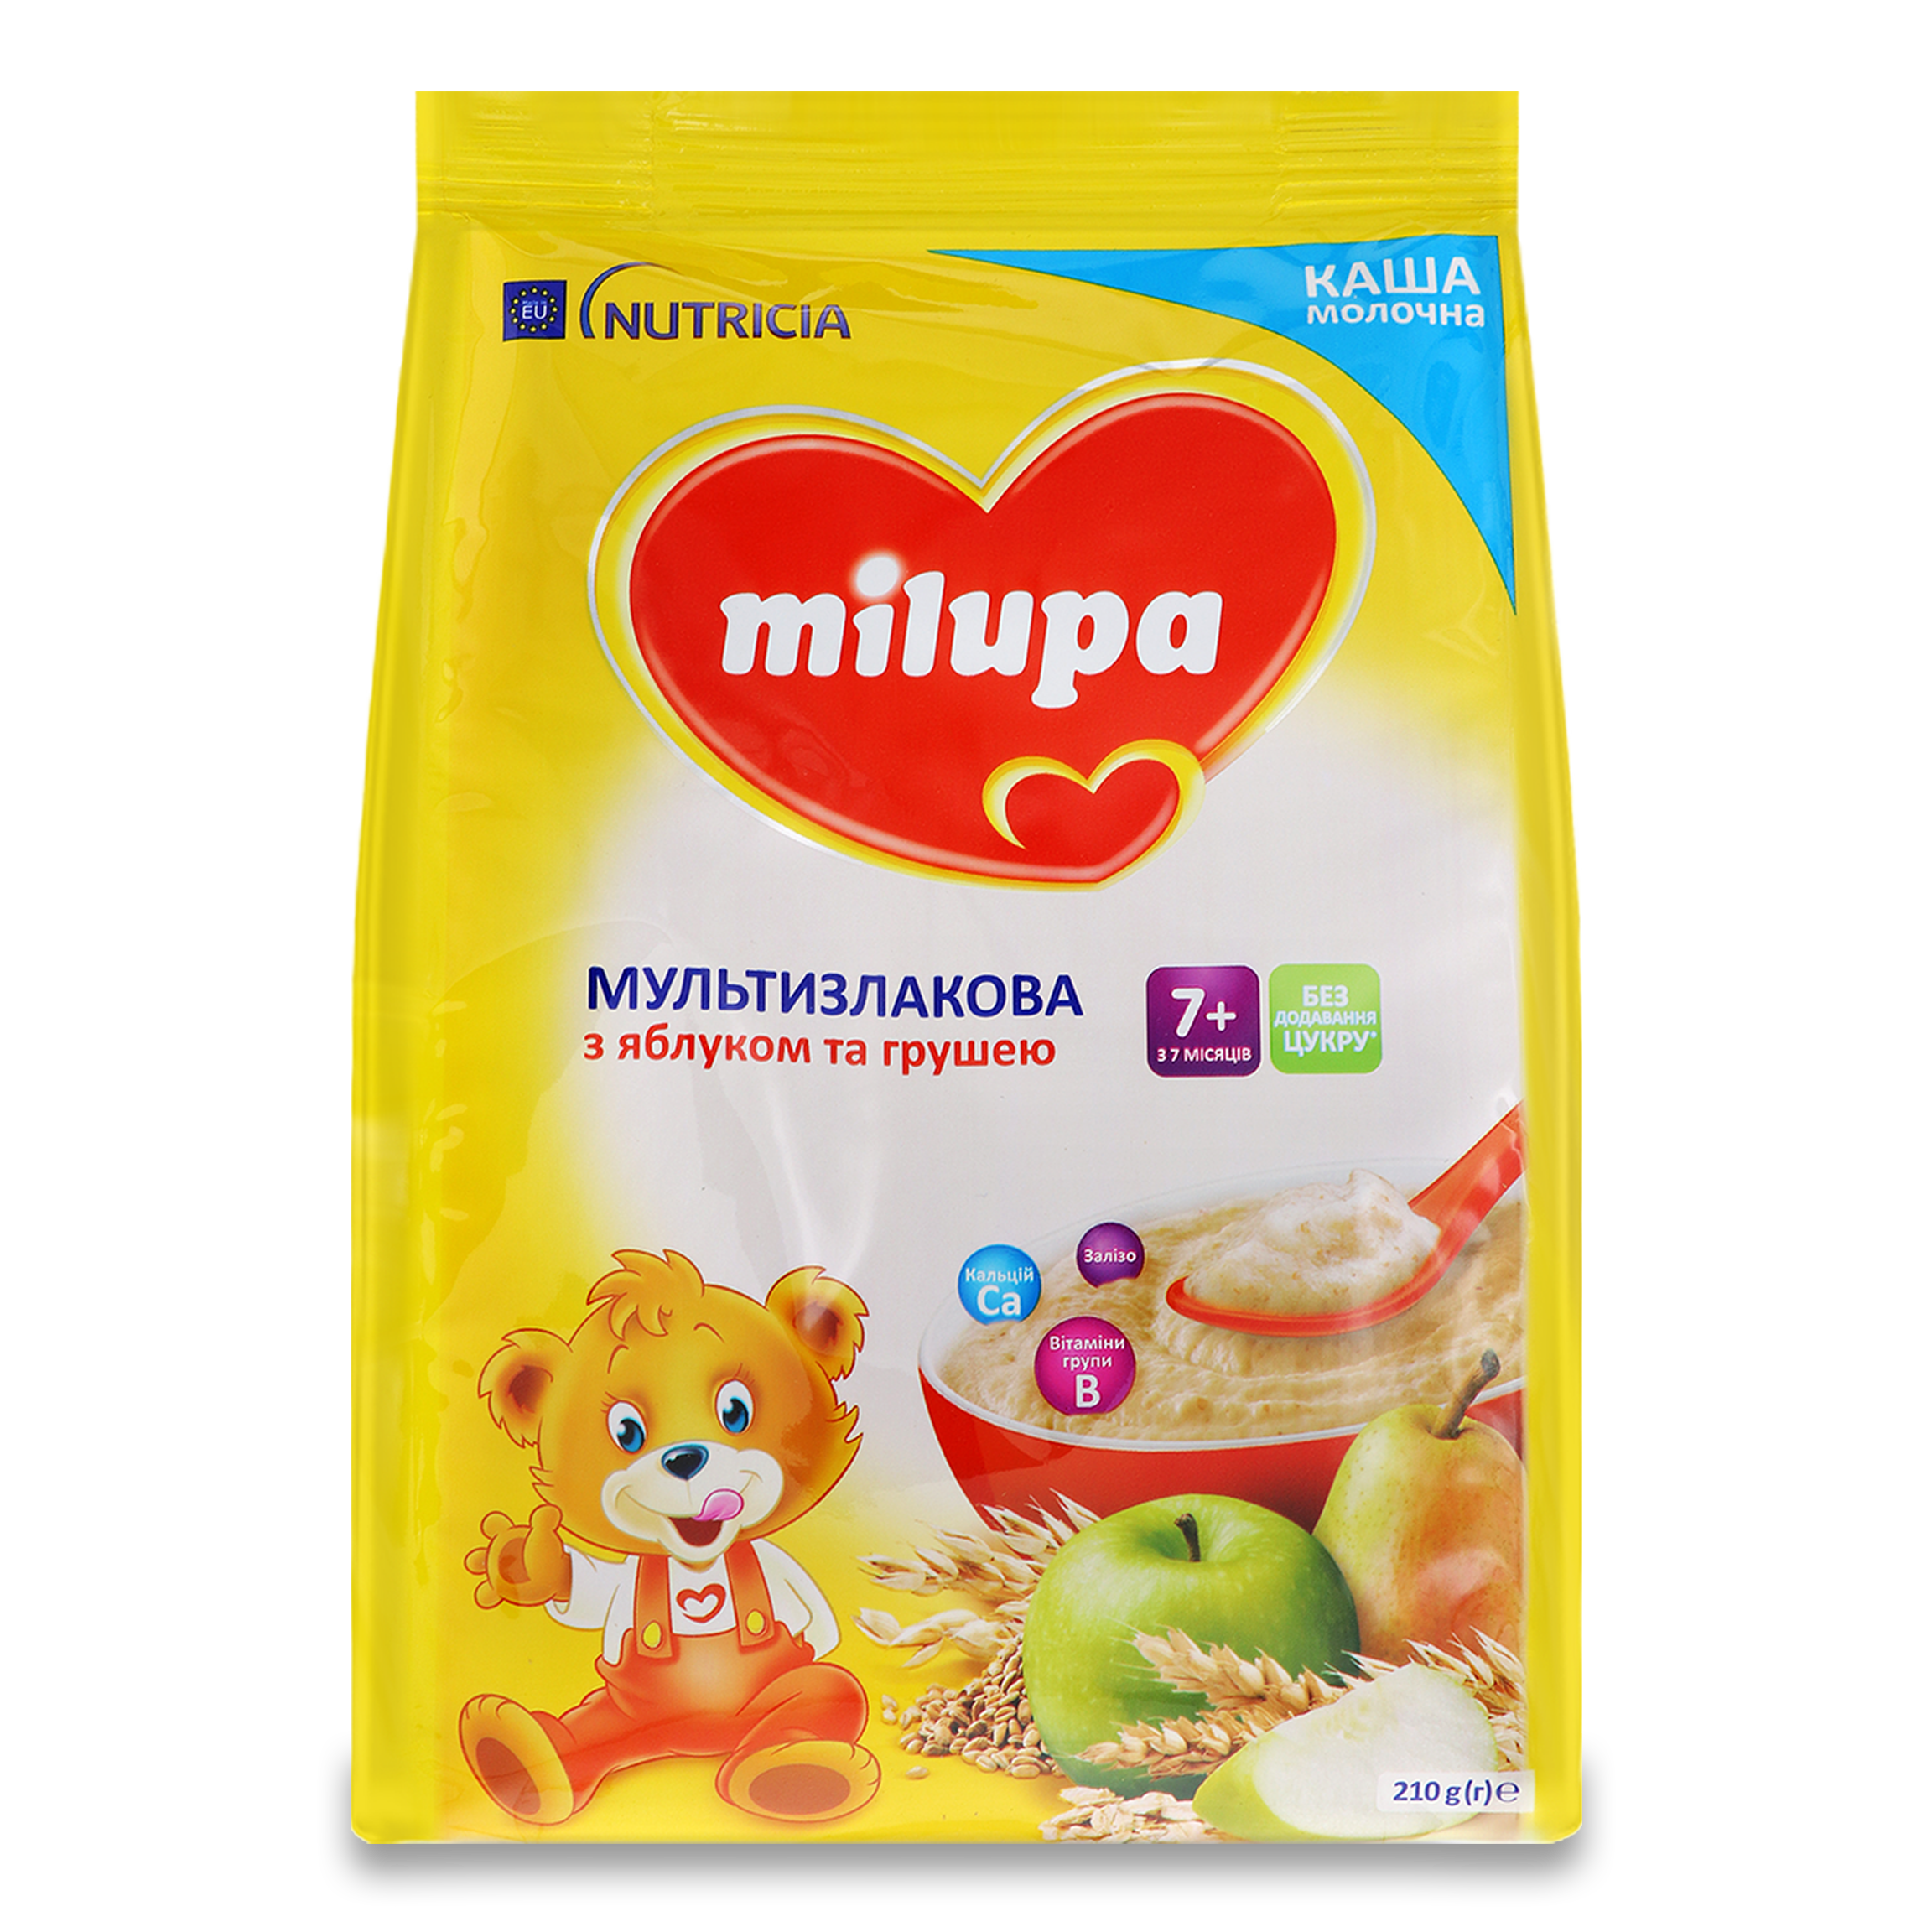 Каша молочна суха Milupa мультизлакова швидкорозчинна з яблуком та грушею для дітей від 7-ми місяців 210г